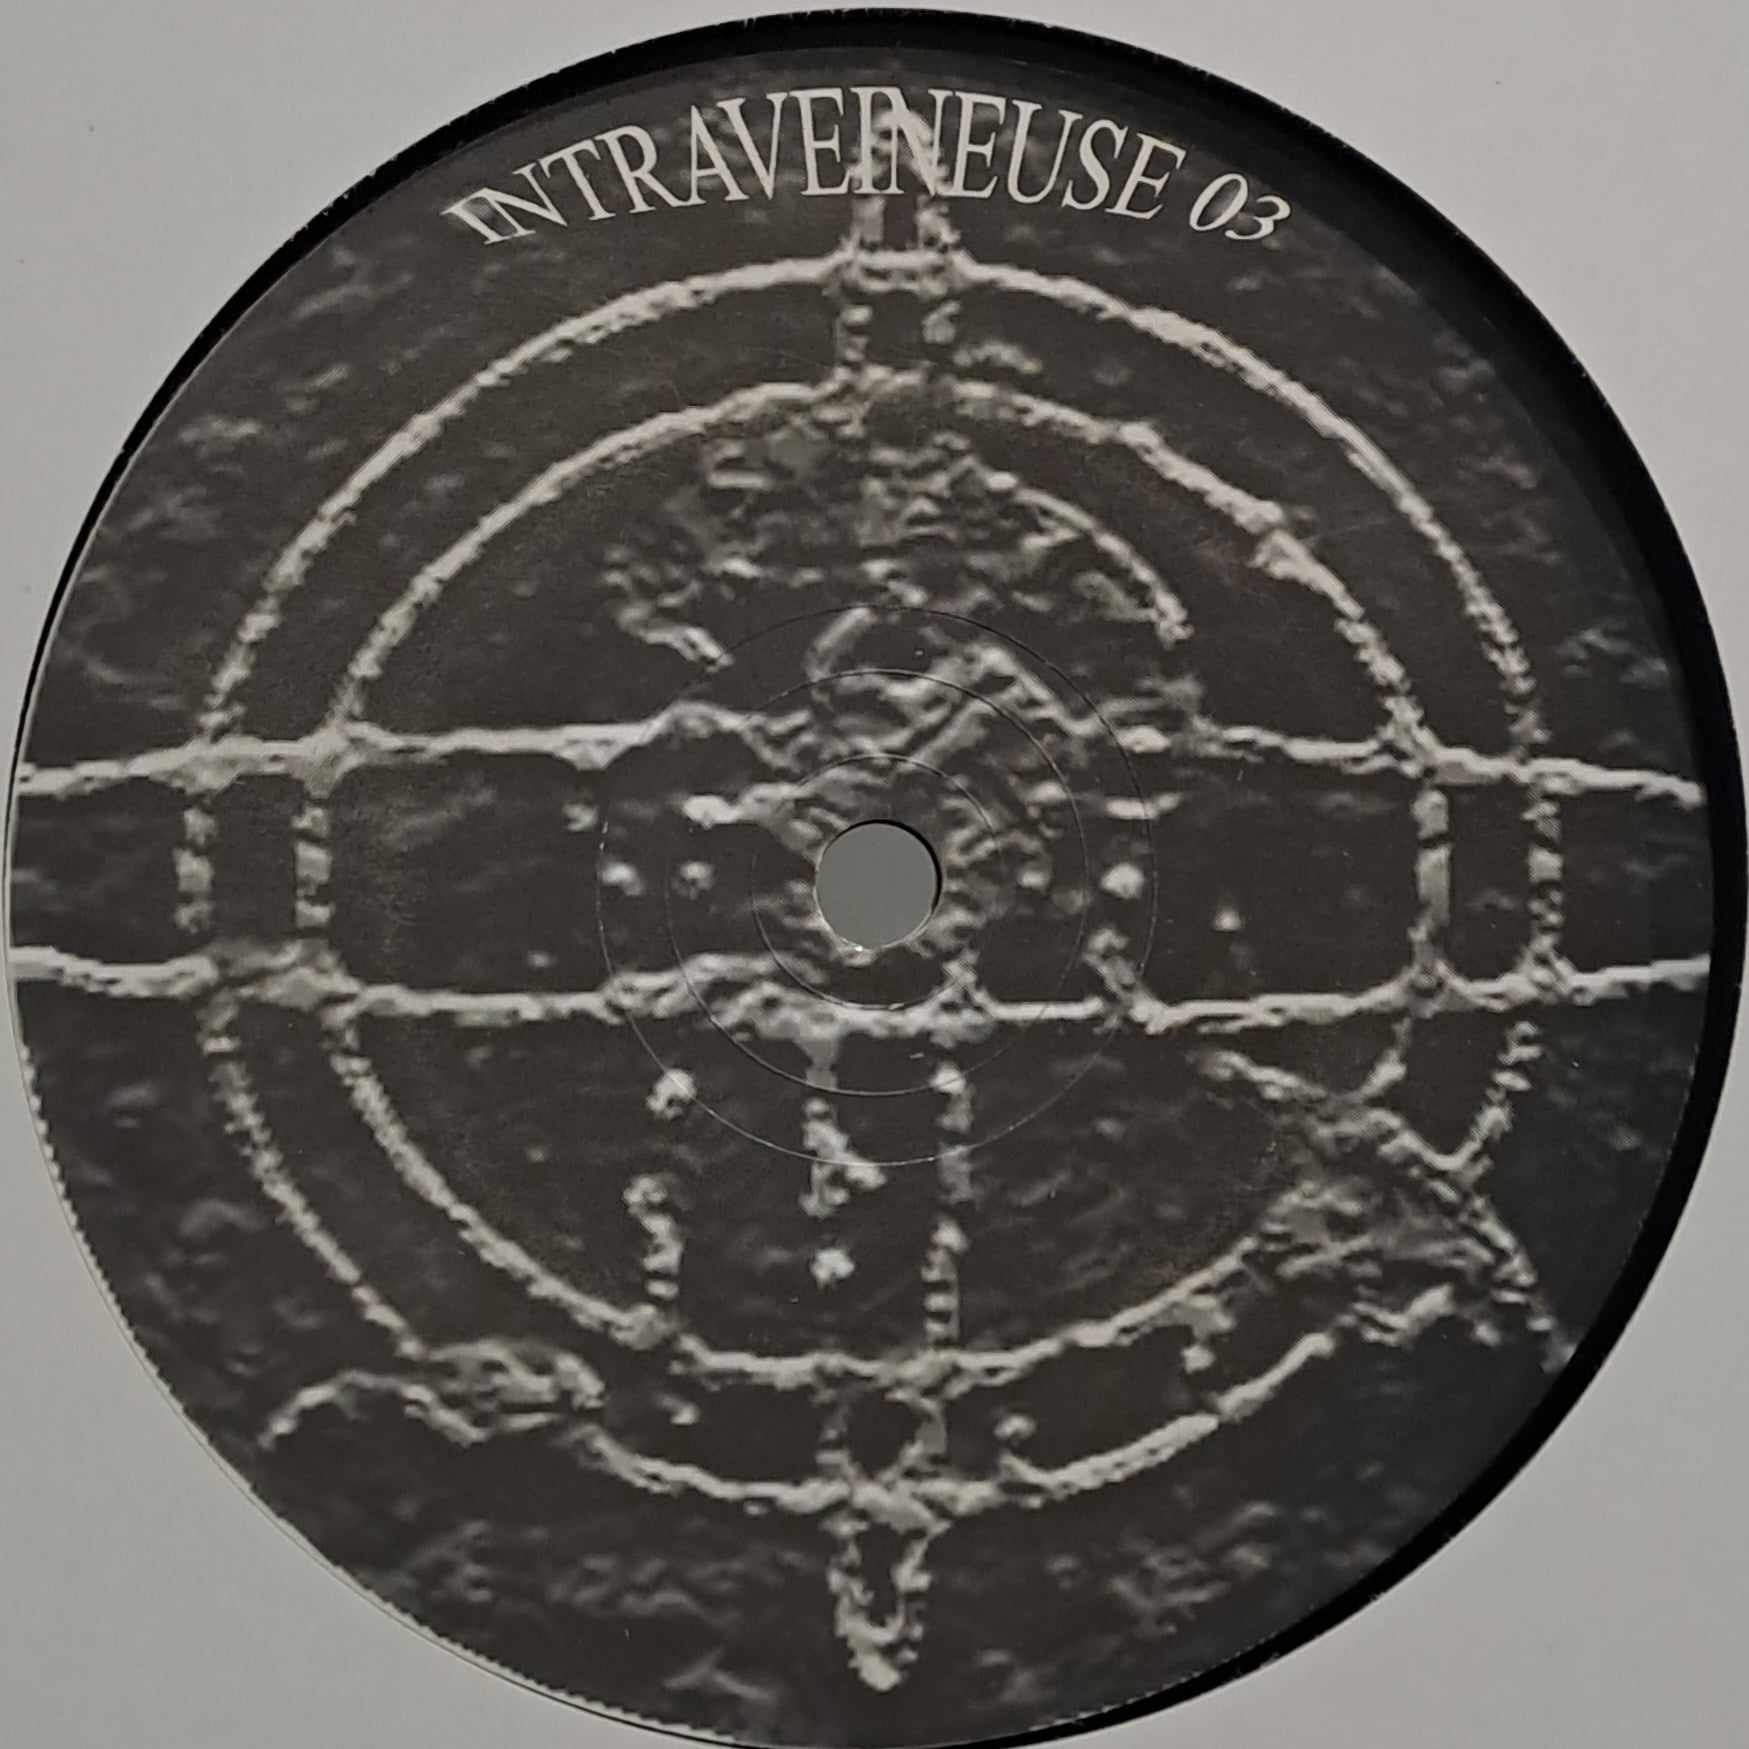 Intraveineuse 03 - vinyle hardcore